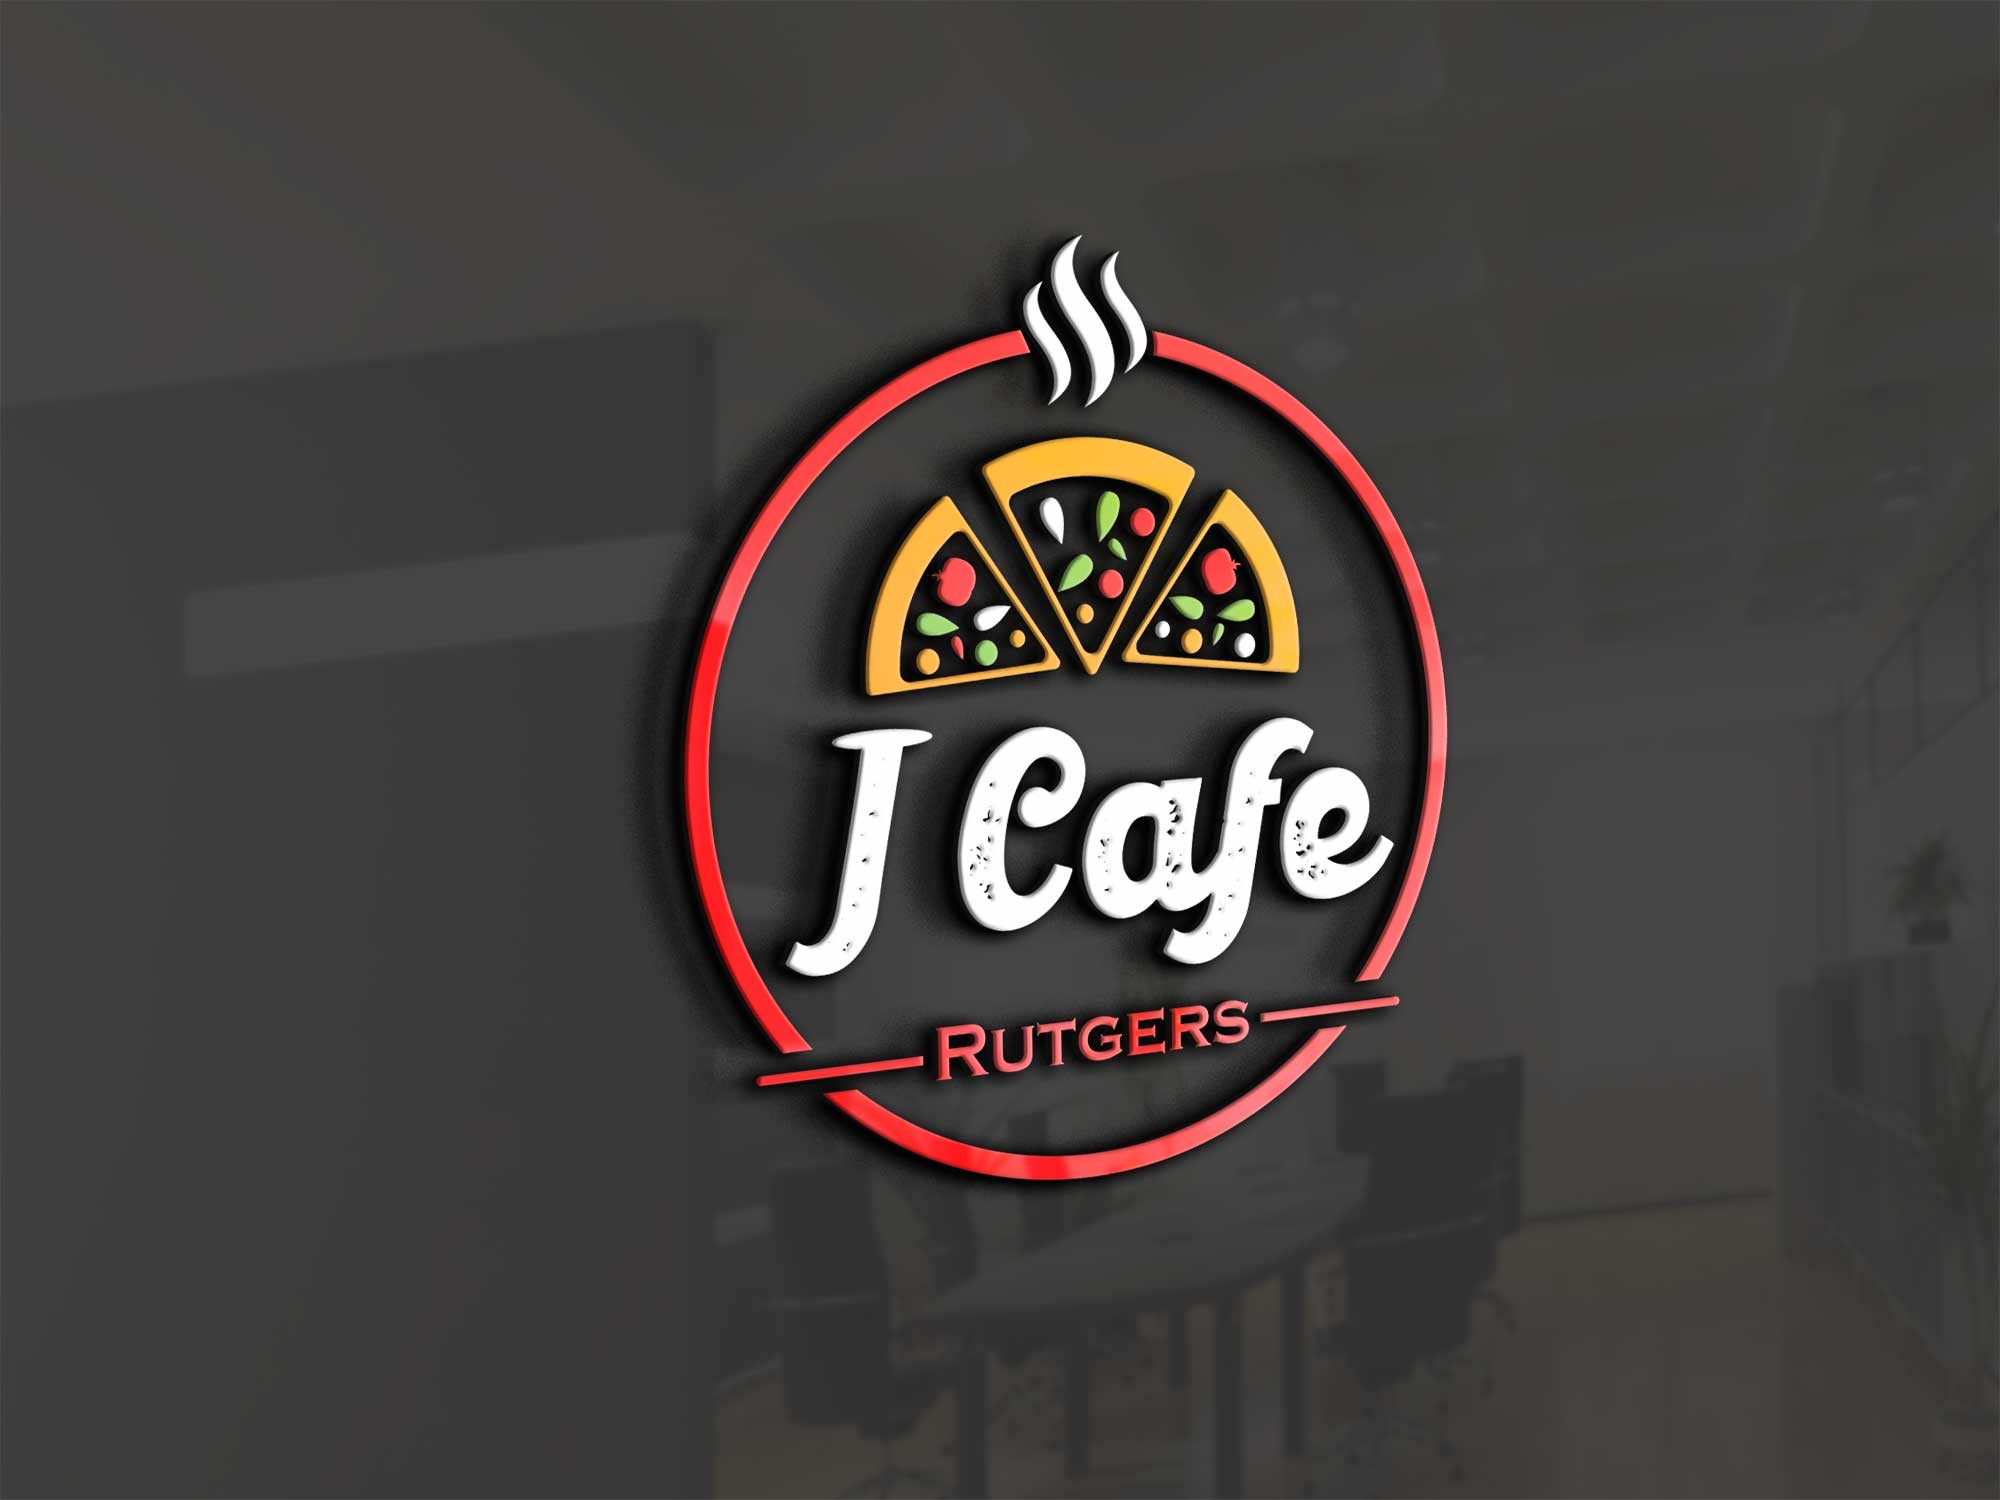 J Cafe Rutgers N/A